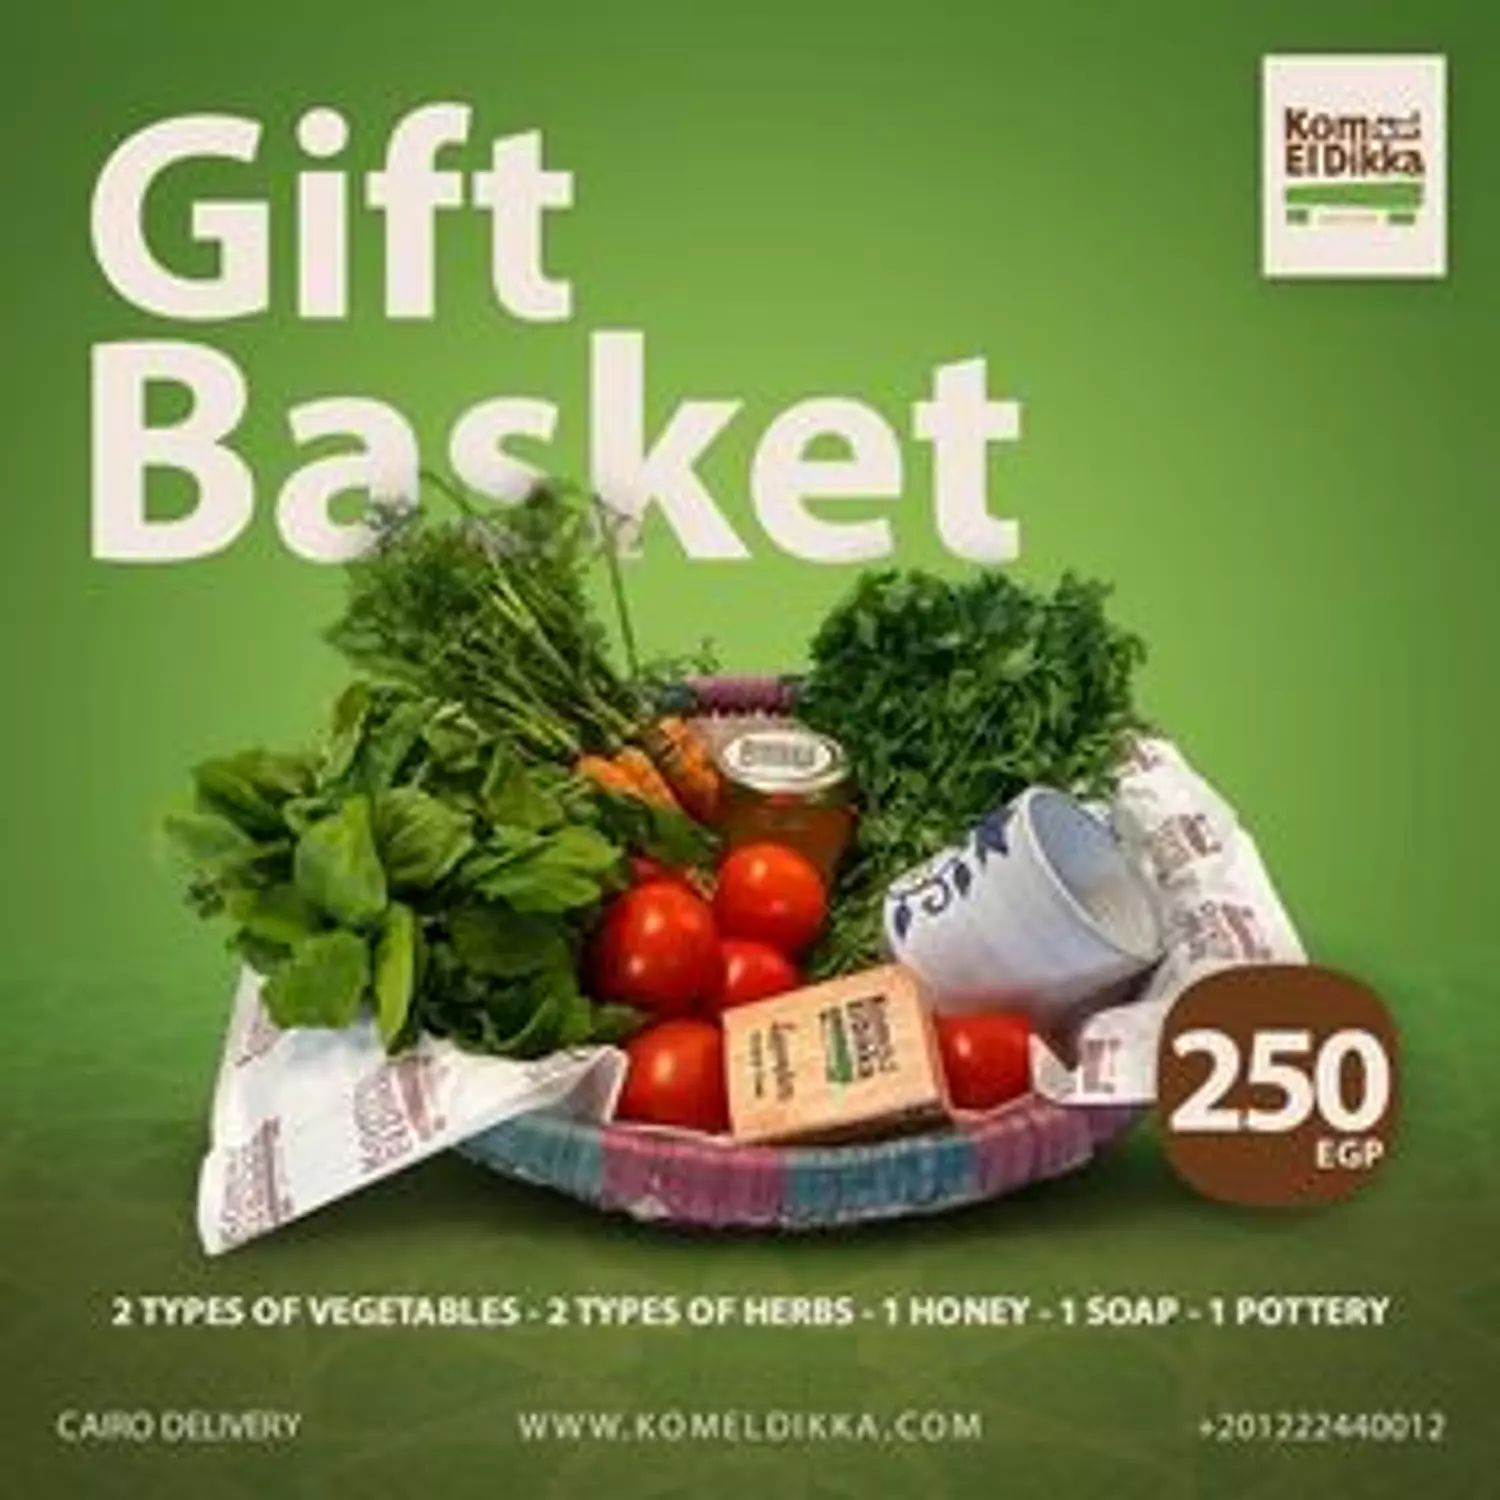 Gift Basket 250 hover image